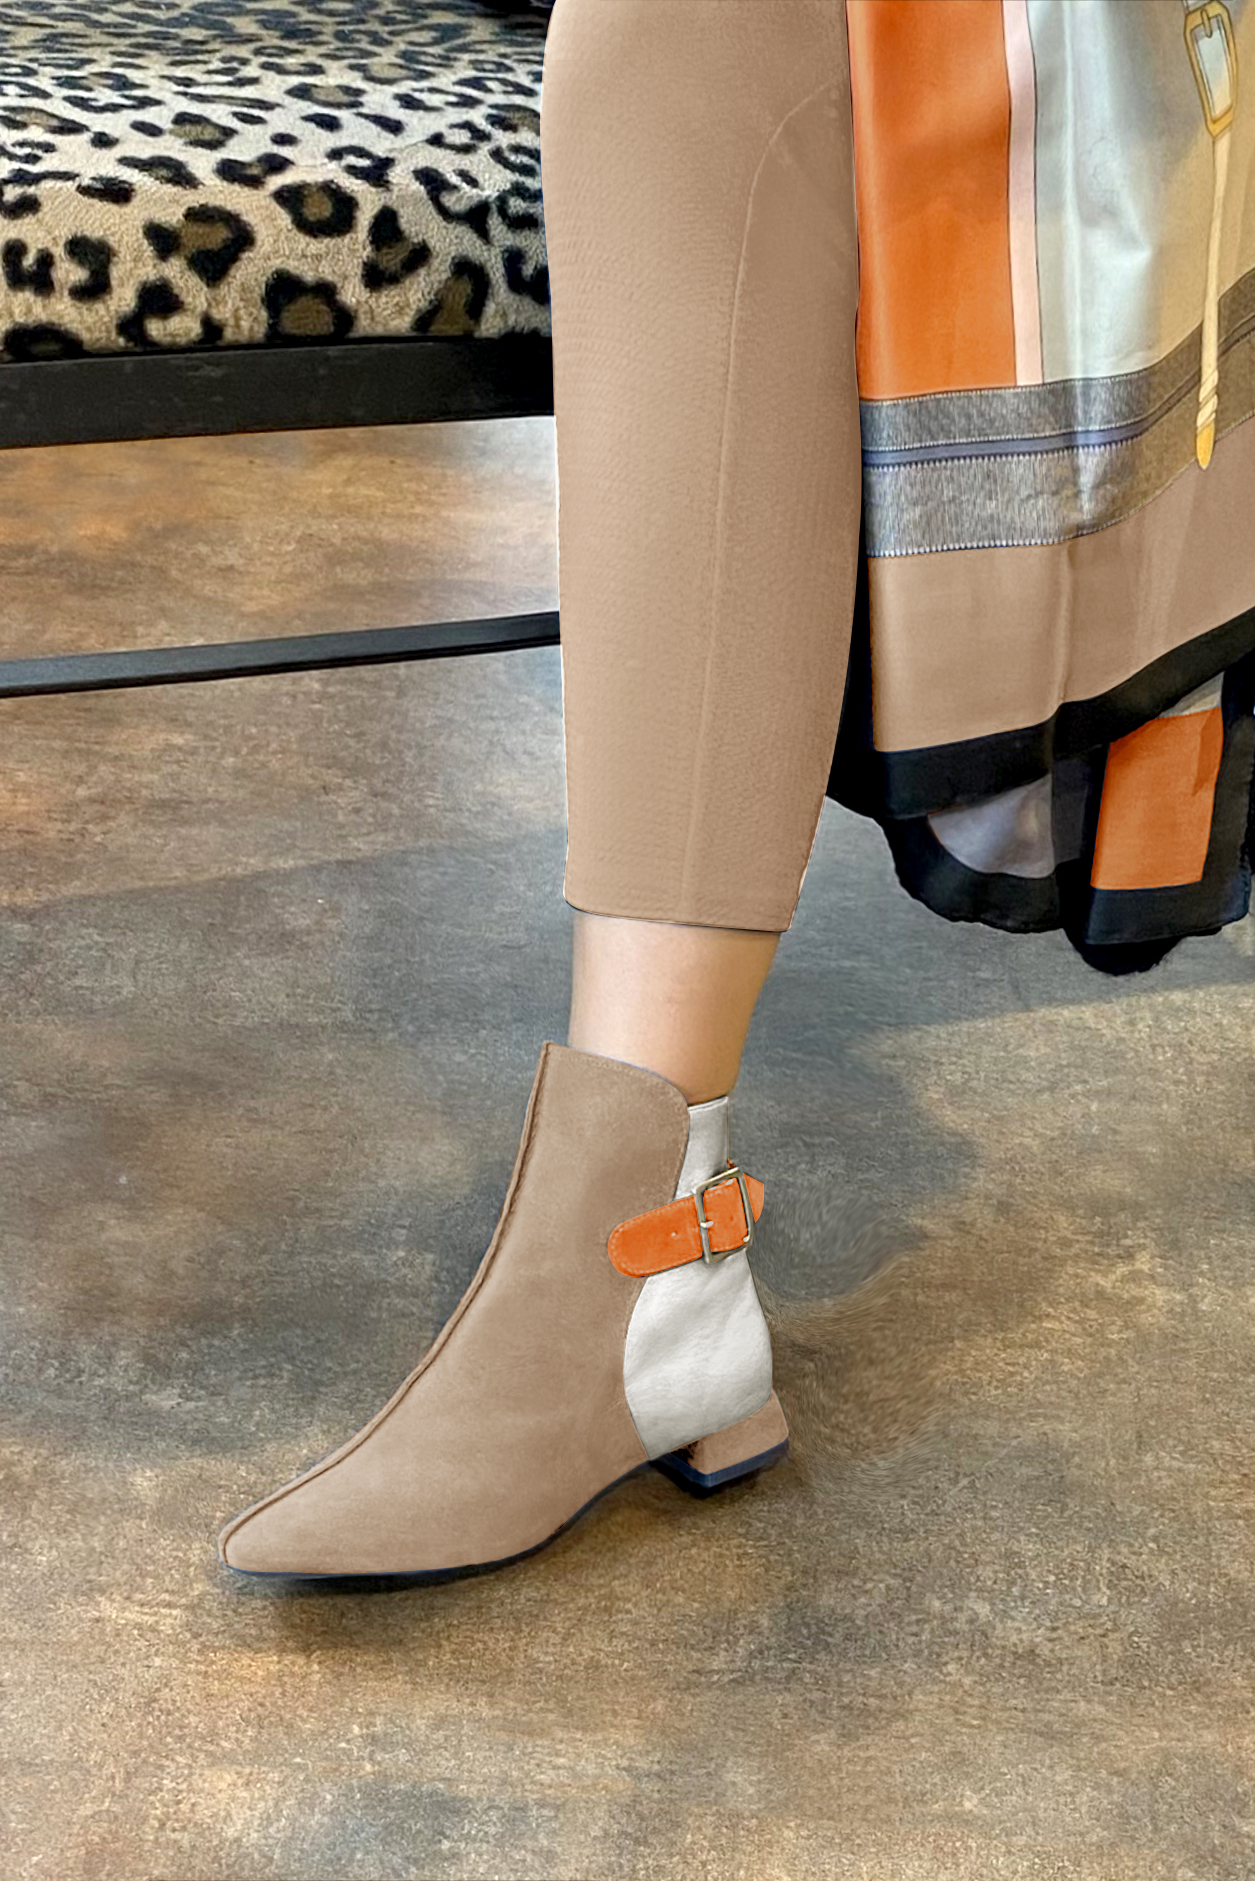 Boots femme : Boots avec des boucles à l'arrière couleur beige sahara, argent platine et orange abricot. Bout carré. Talon plat évasé. Vue porté - Florence KOOIJMAN